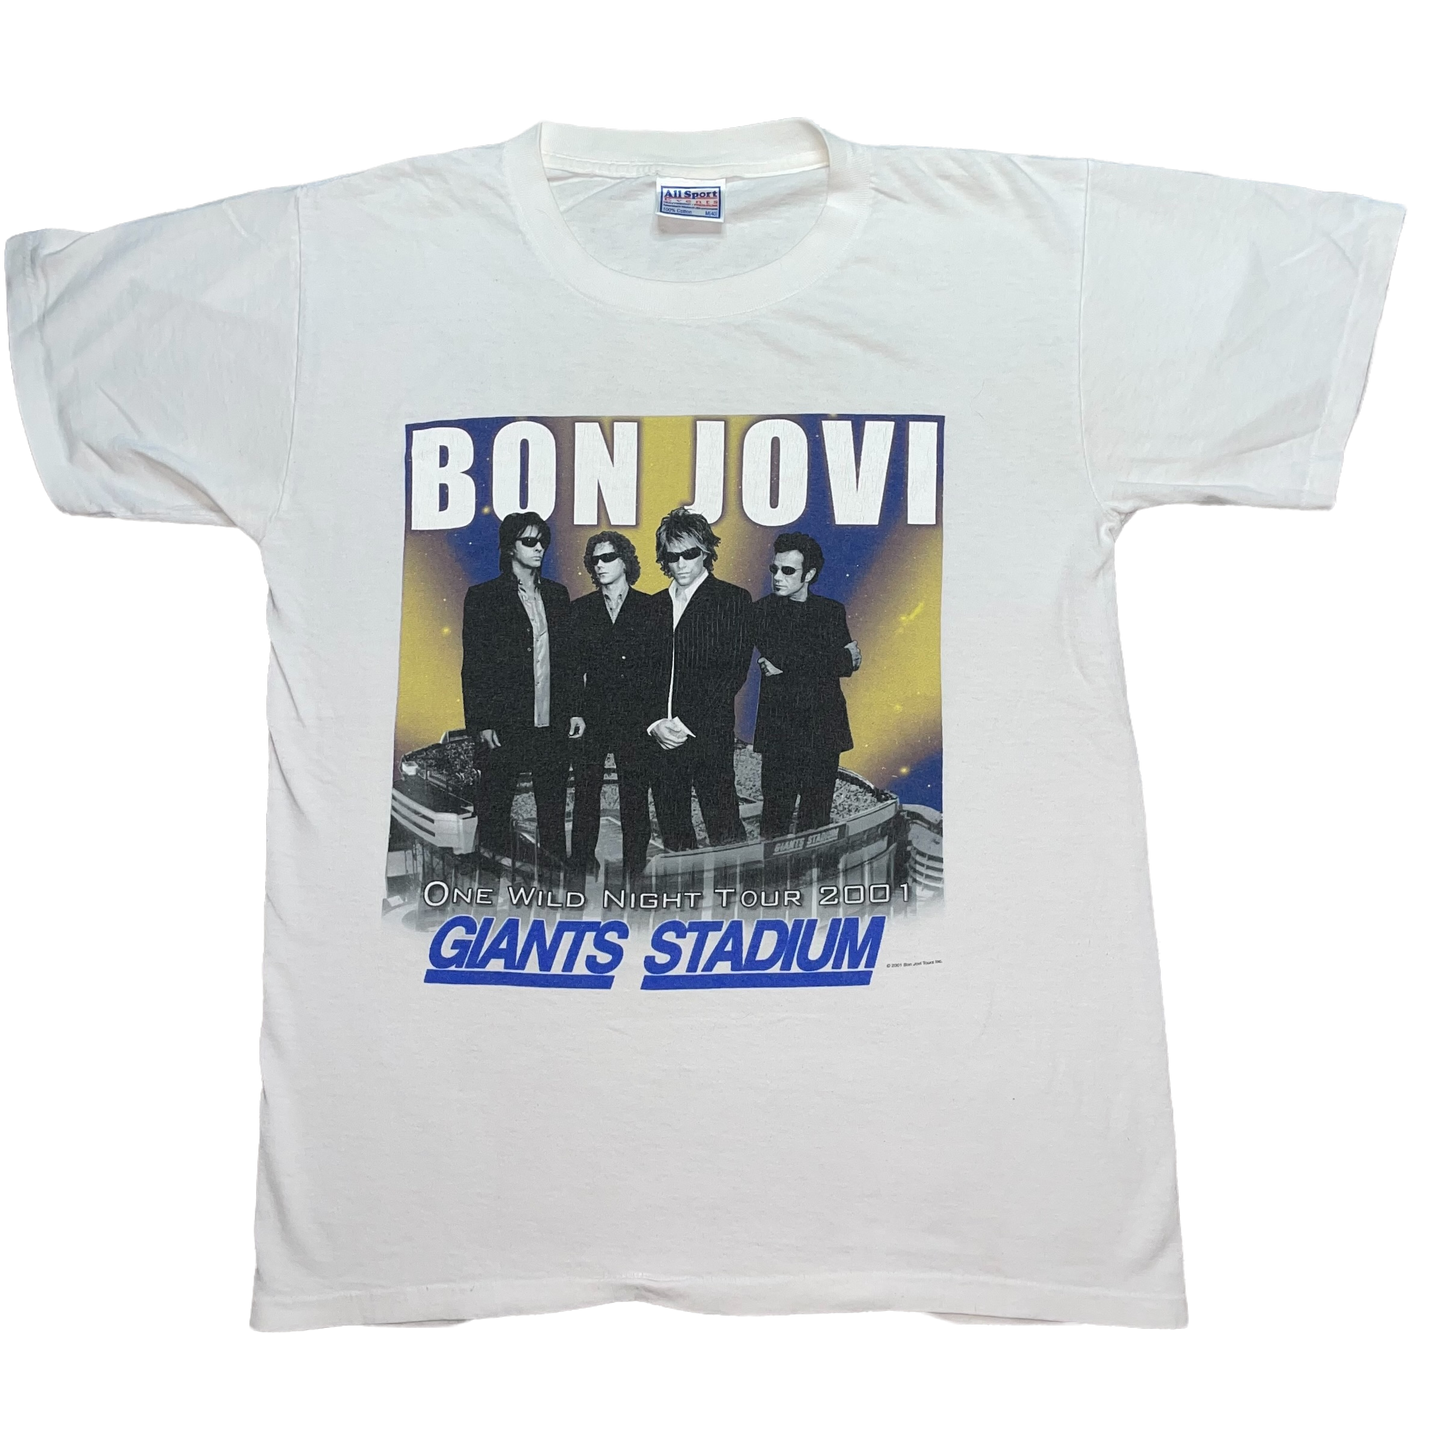 2001 Bon Jovi "One Wild Night Tour Giant's Stadium" Graphic Tee